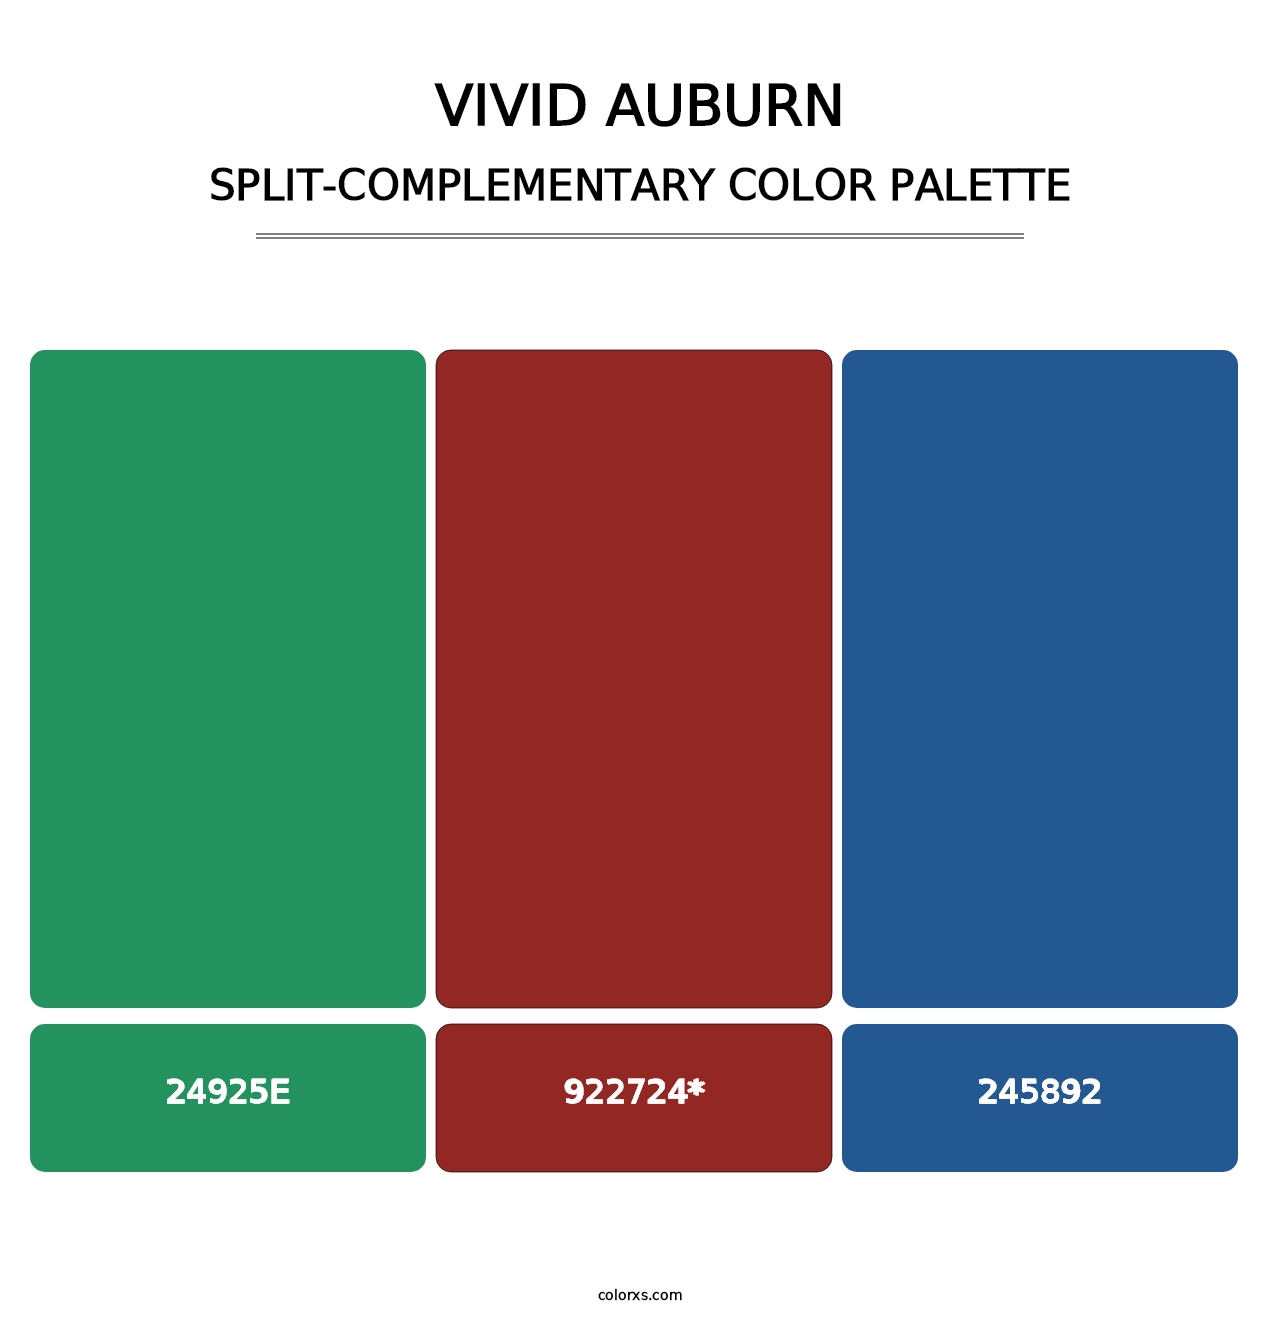 Vivid Auburn - Split-Complementary Color Palette